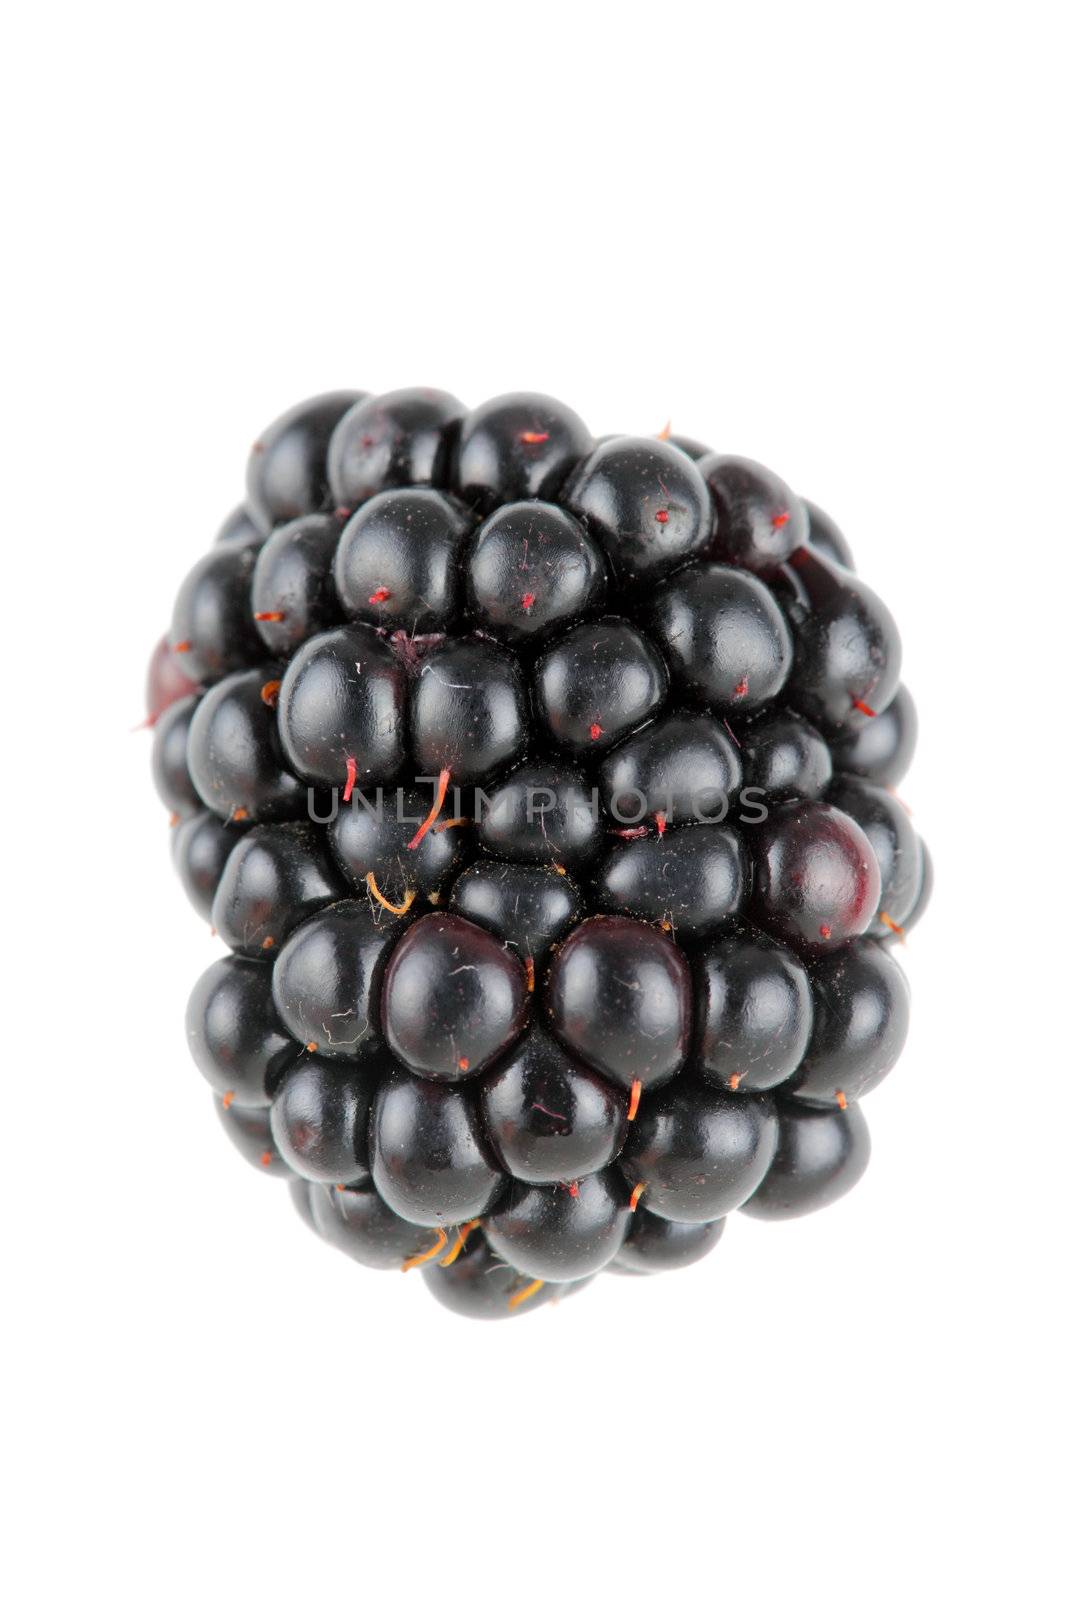 single ripe blackberry against white background